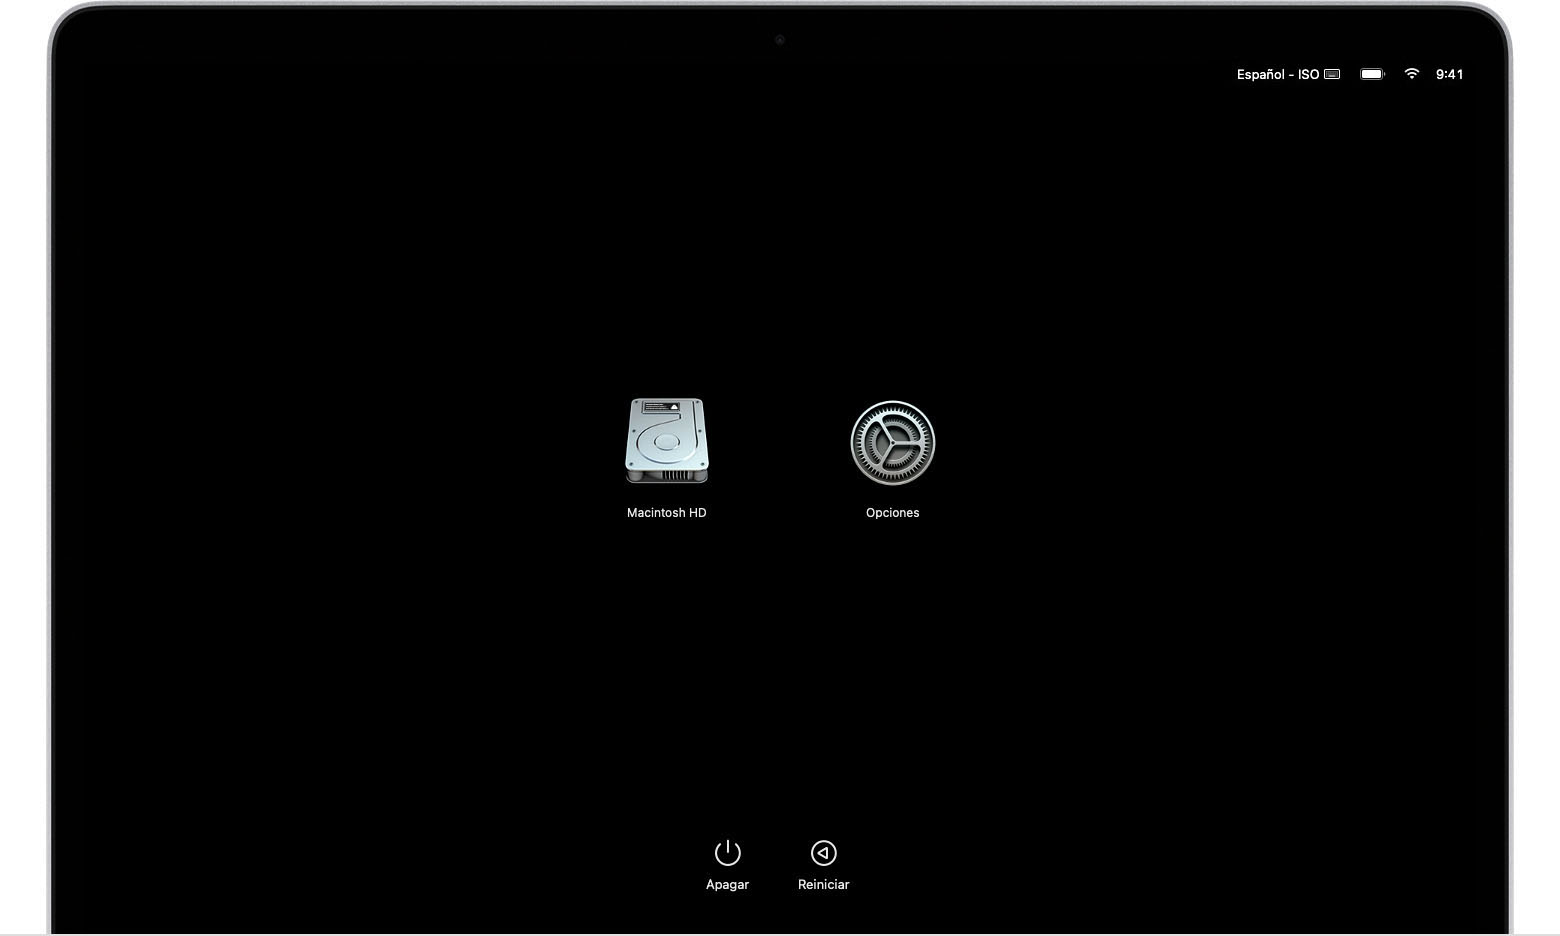 Pantalla de opciones de arranque de macOS en la que se muestran los íconos de Opciones y Macintosh HD